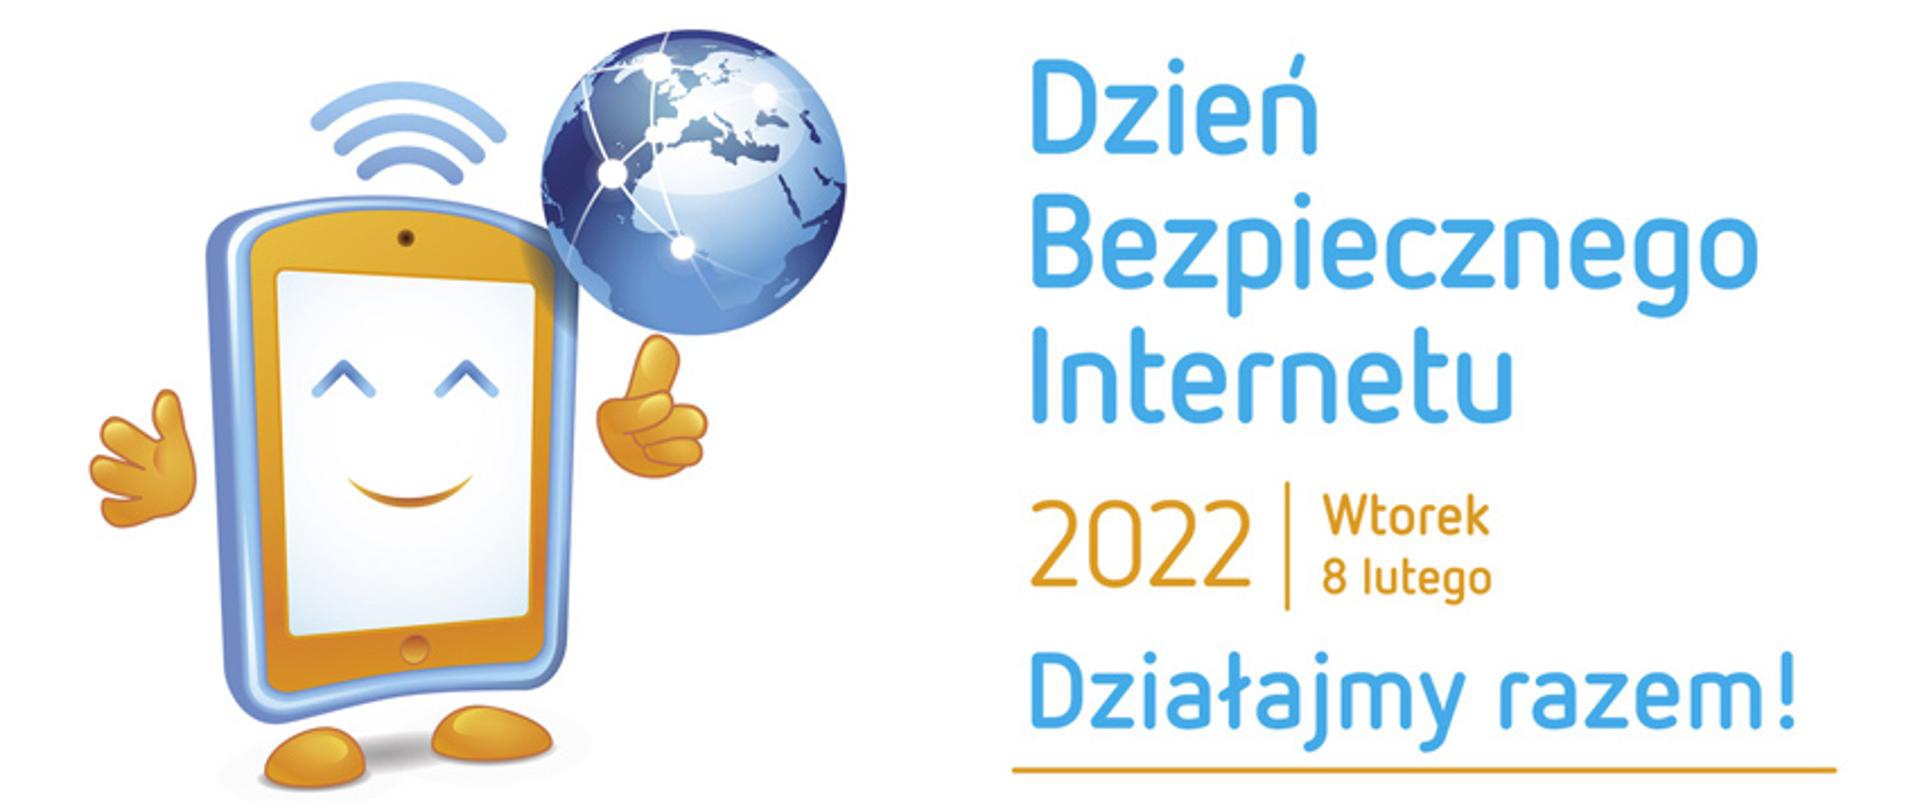 Dzień Bezpiecznego Internetu 2023